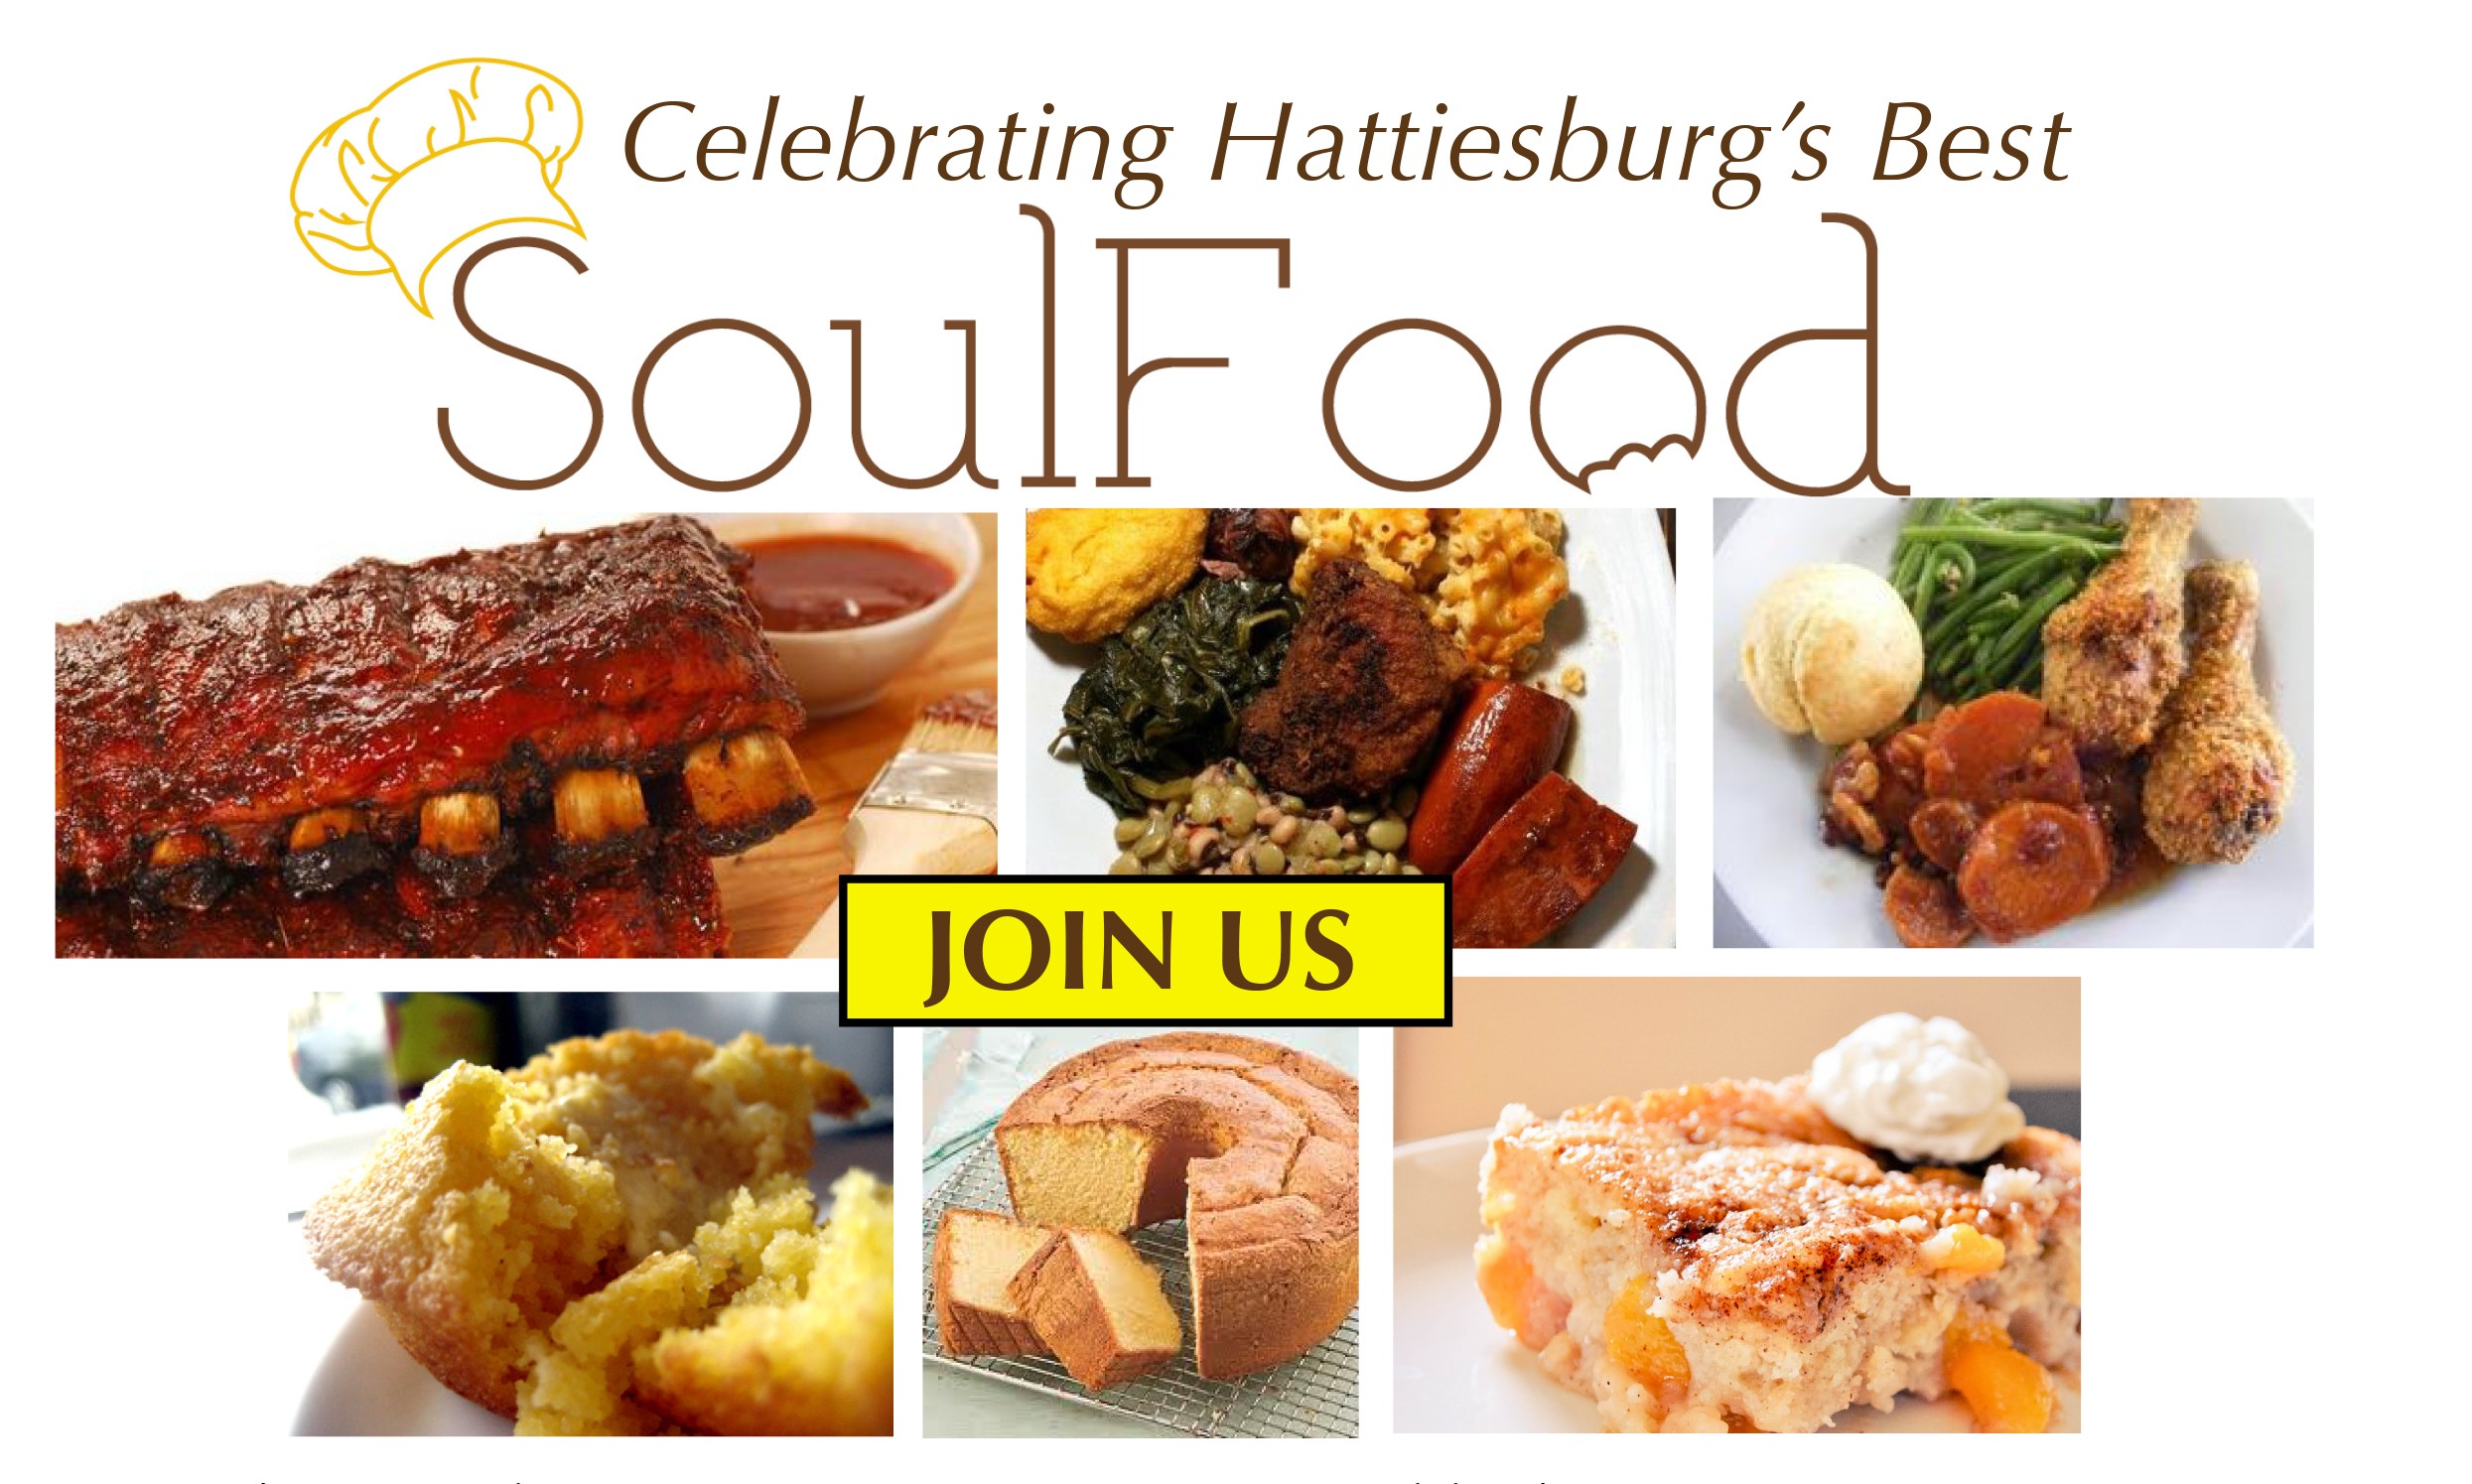 Hattiesburg's Best Soul Food of 2015